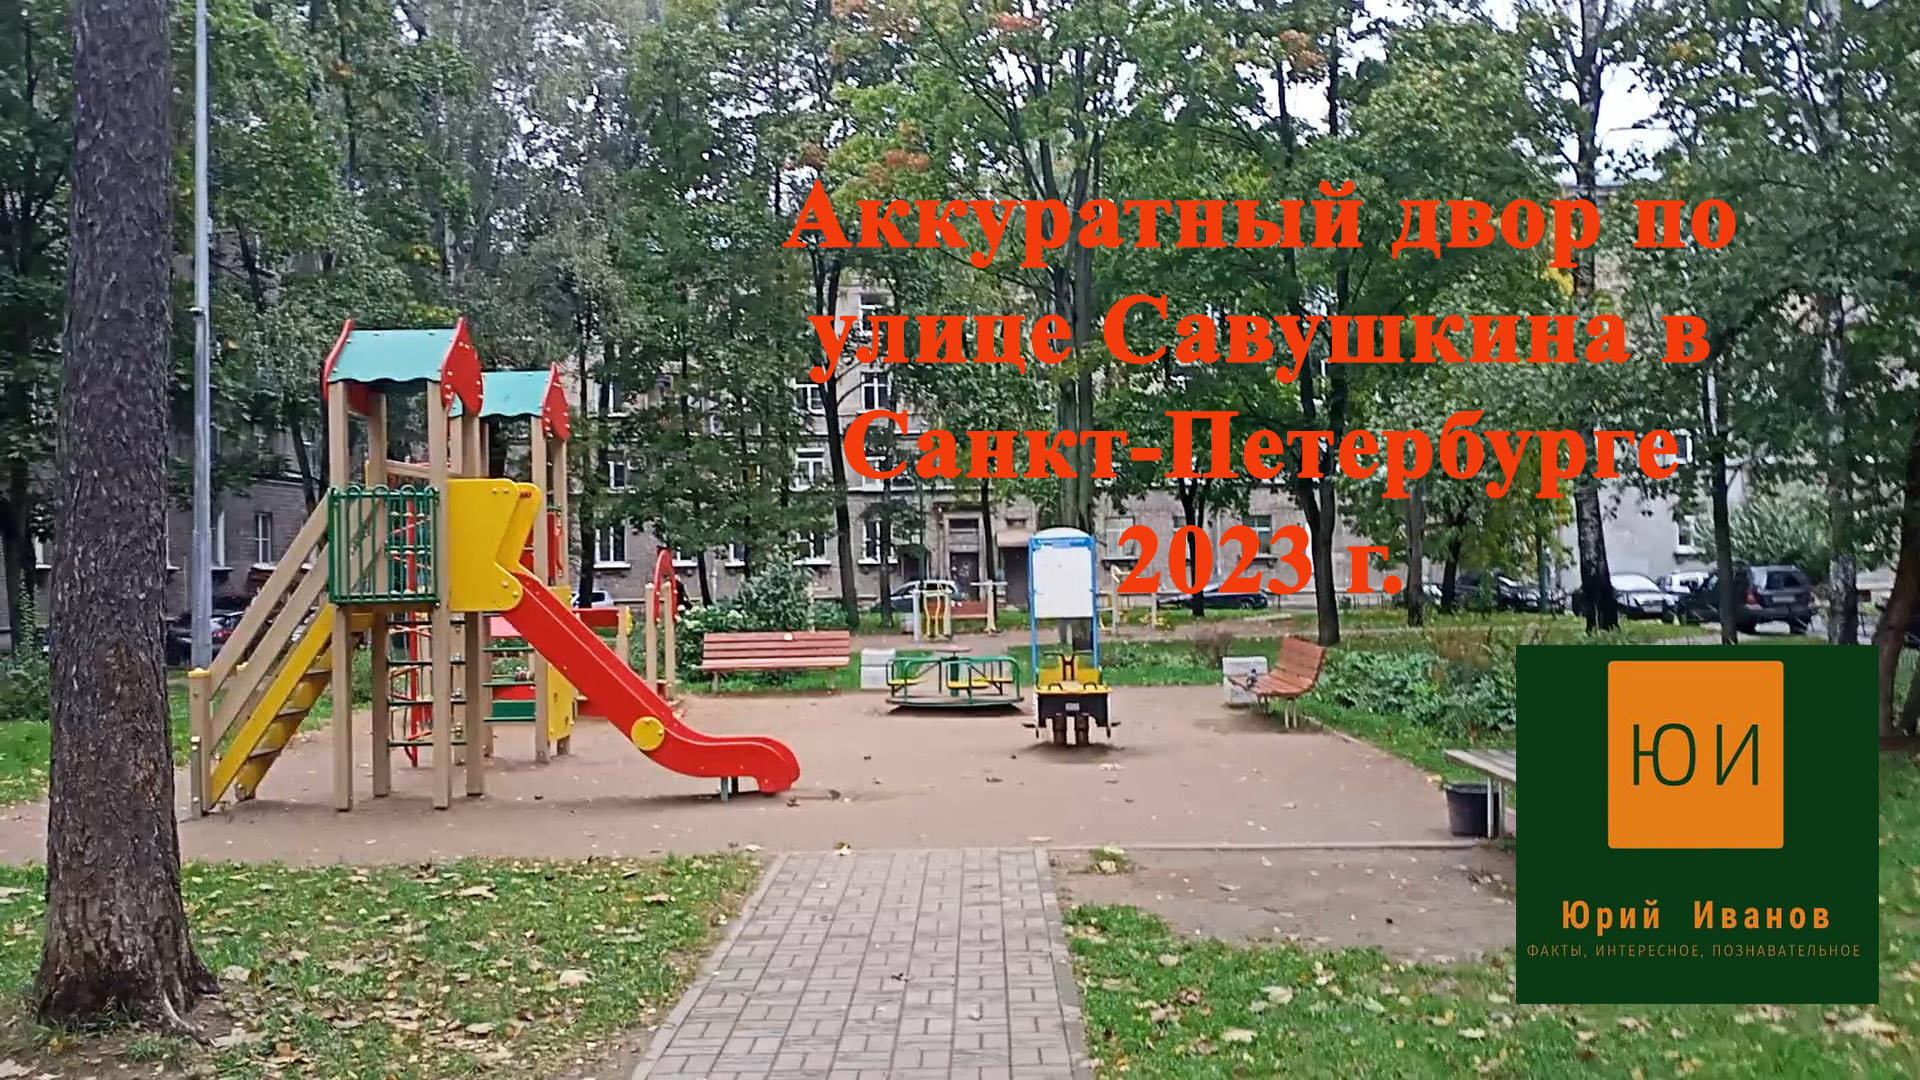 4.Аккуратный двор по улице Савушкина в Санкт-Петербурге